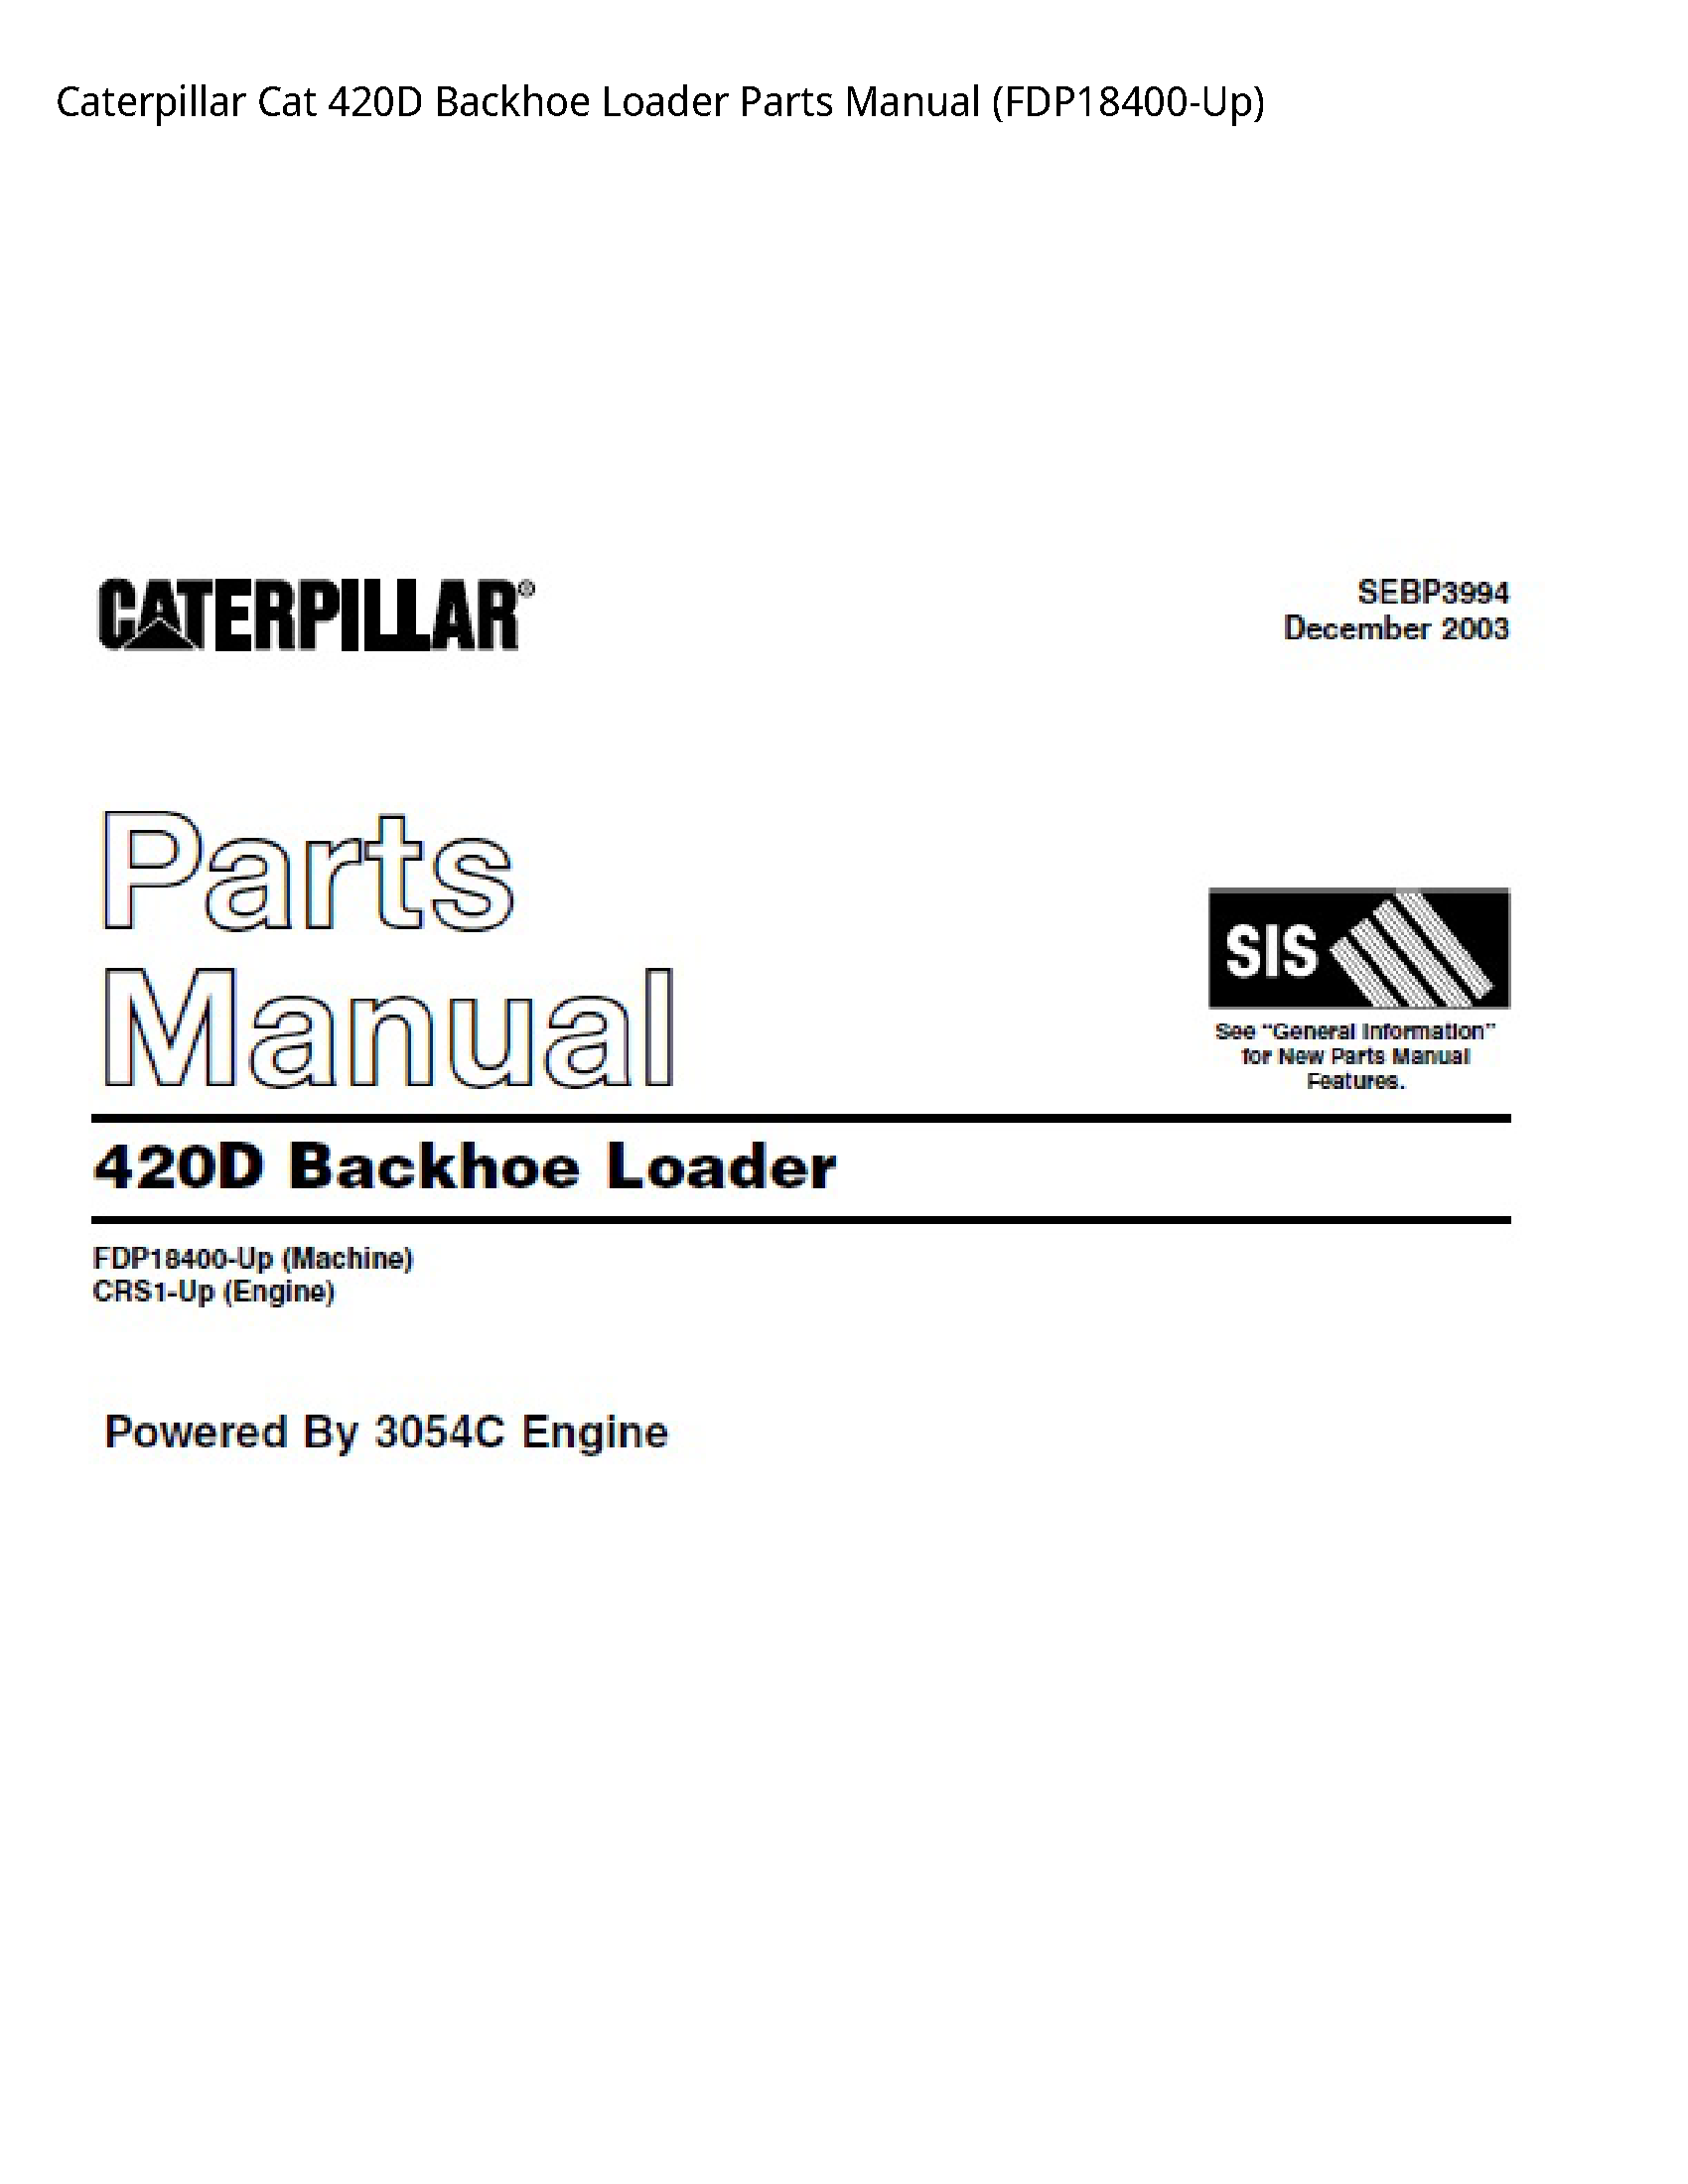 Caterpillar 420D Cat Backhoe Loader Parts manual